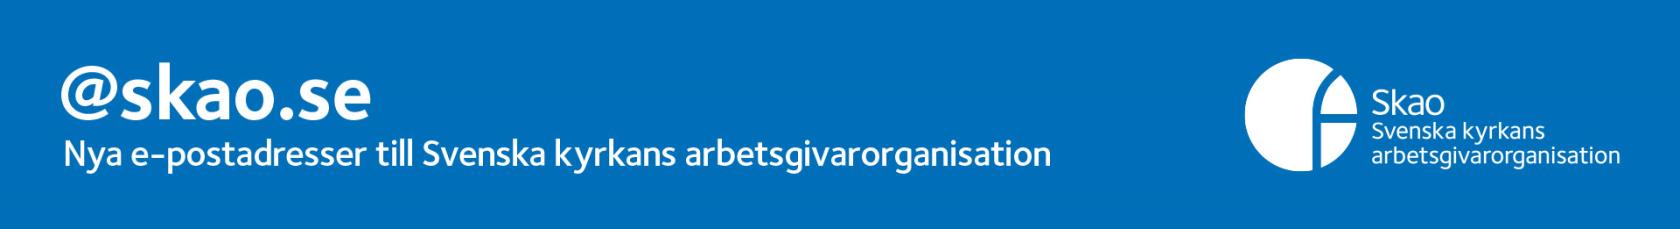 @ skao.se Nya e-postadresser till Svenska kyrkans arbetsgivarorganisation